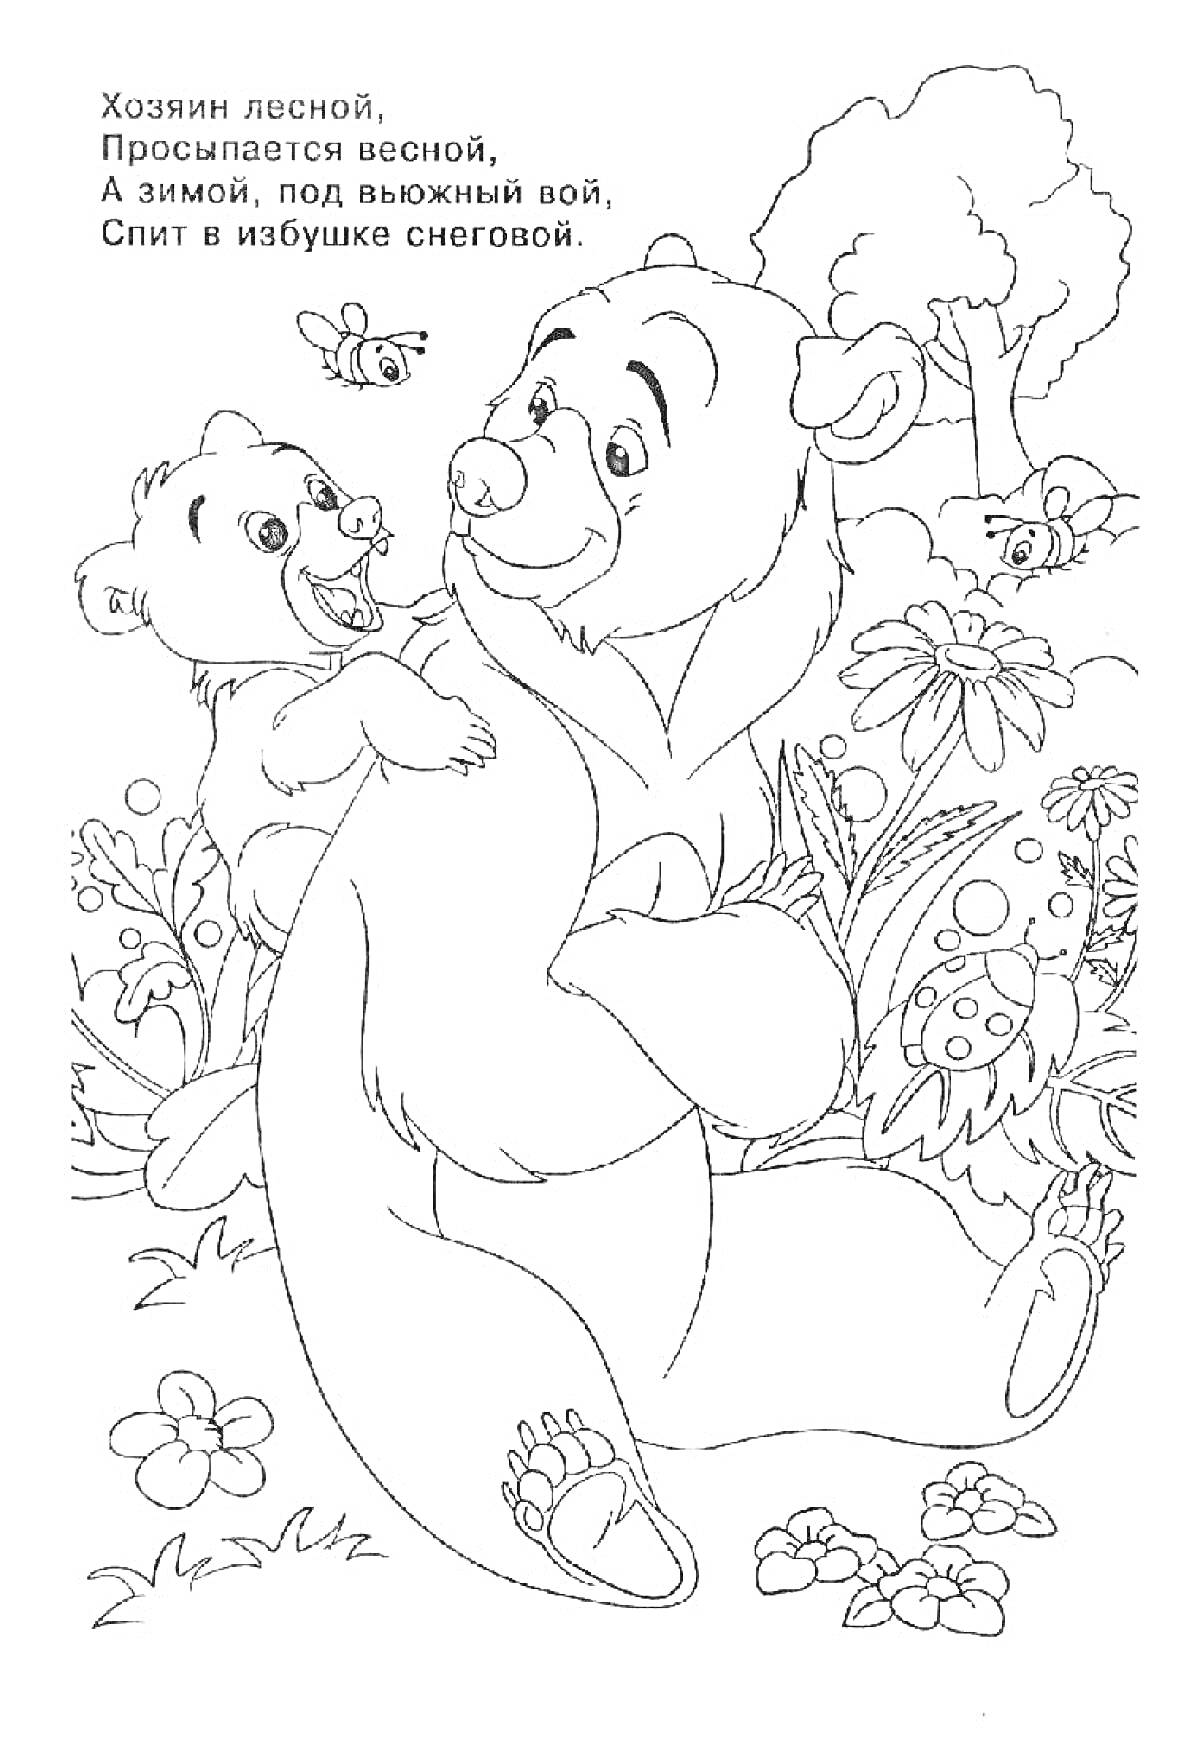 Раскраска Медведь и медвежонок среди цветов и растительности, с текстом загадки 